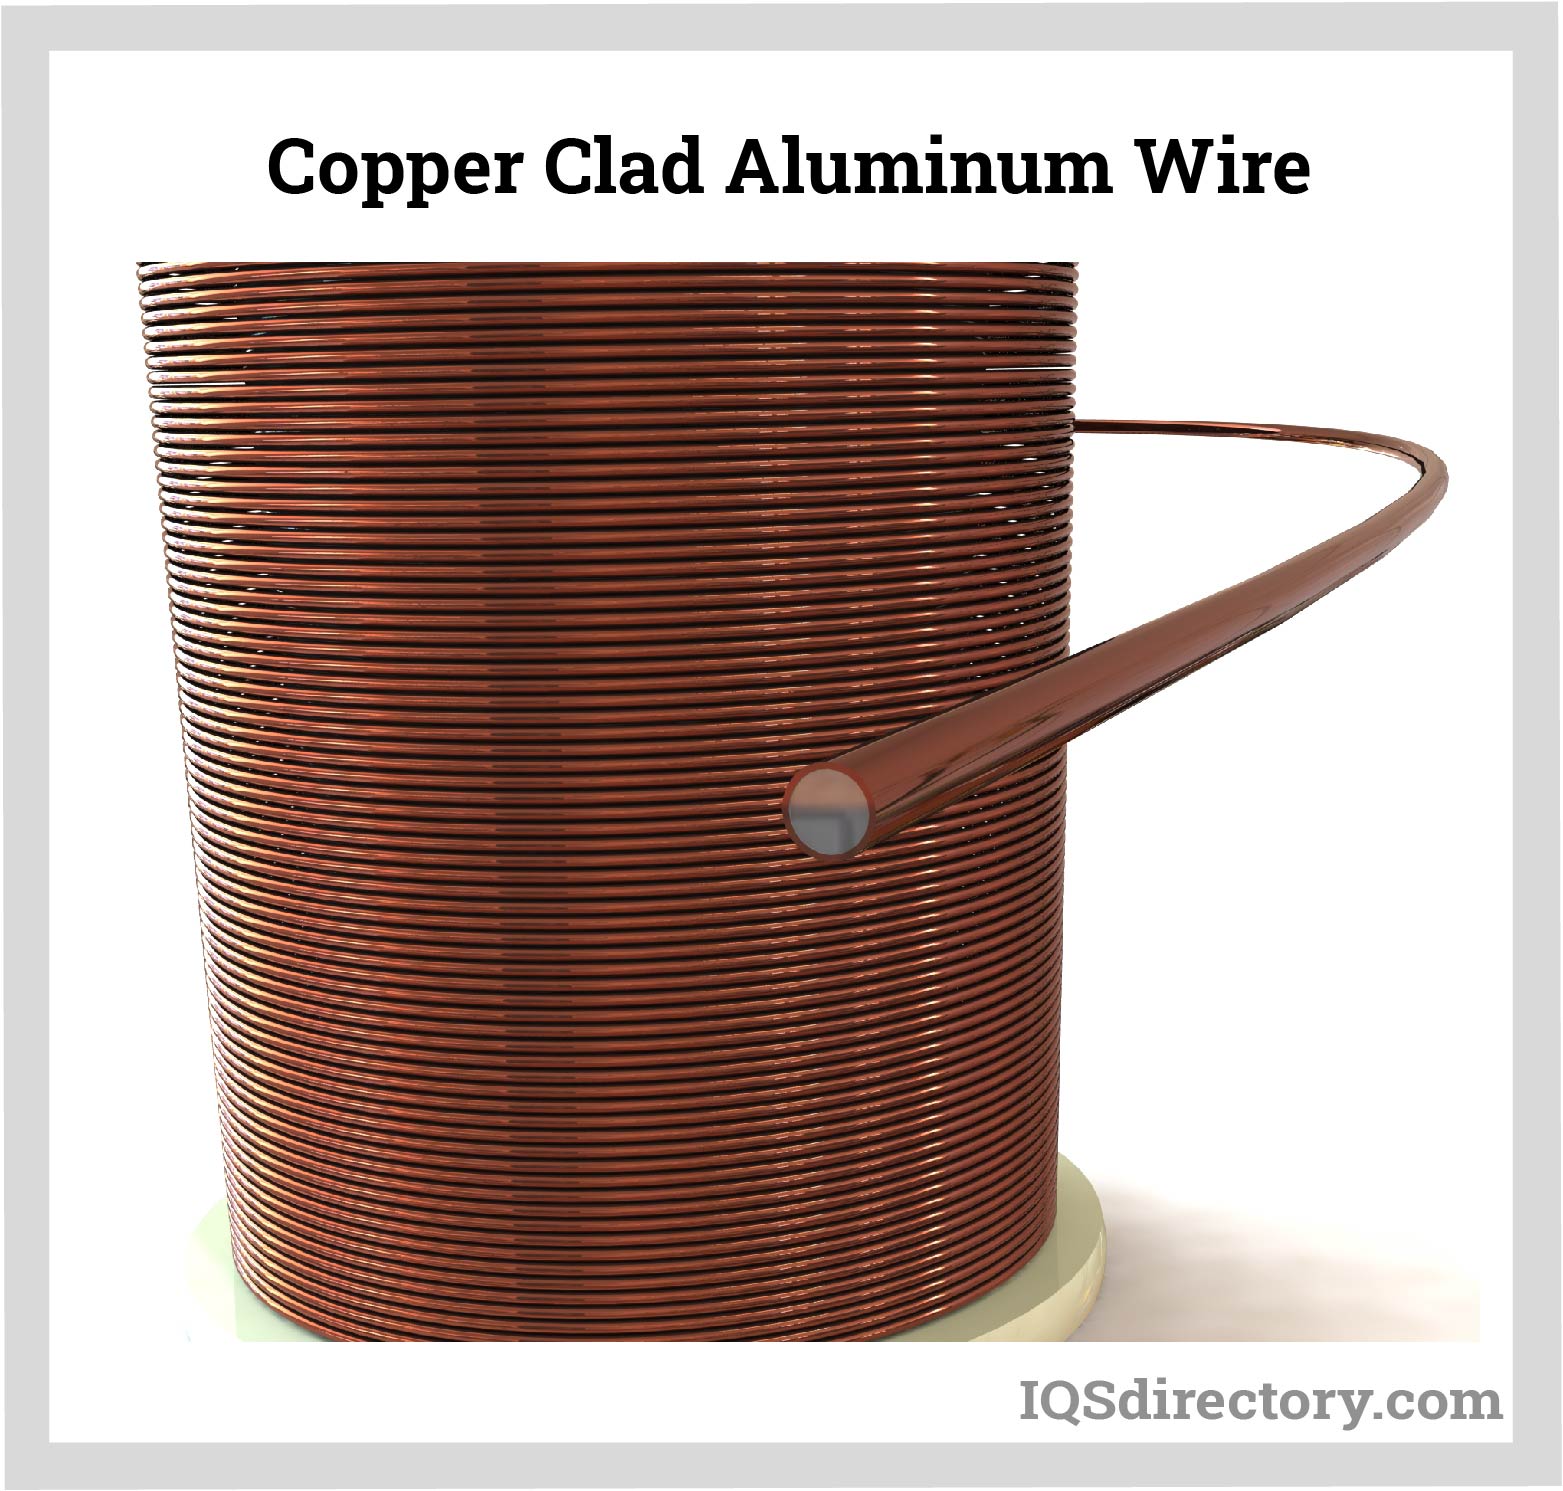 Copper-Clad Aluminum Wire